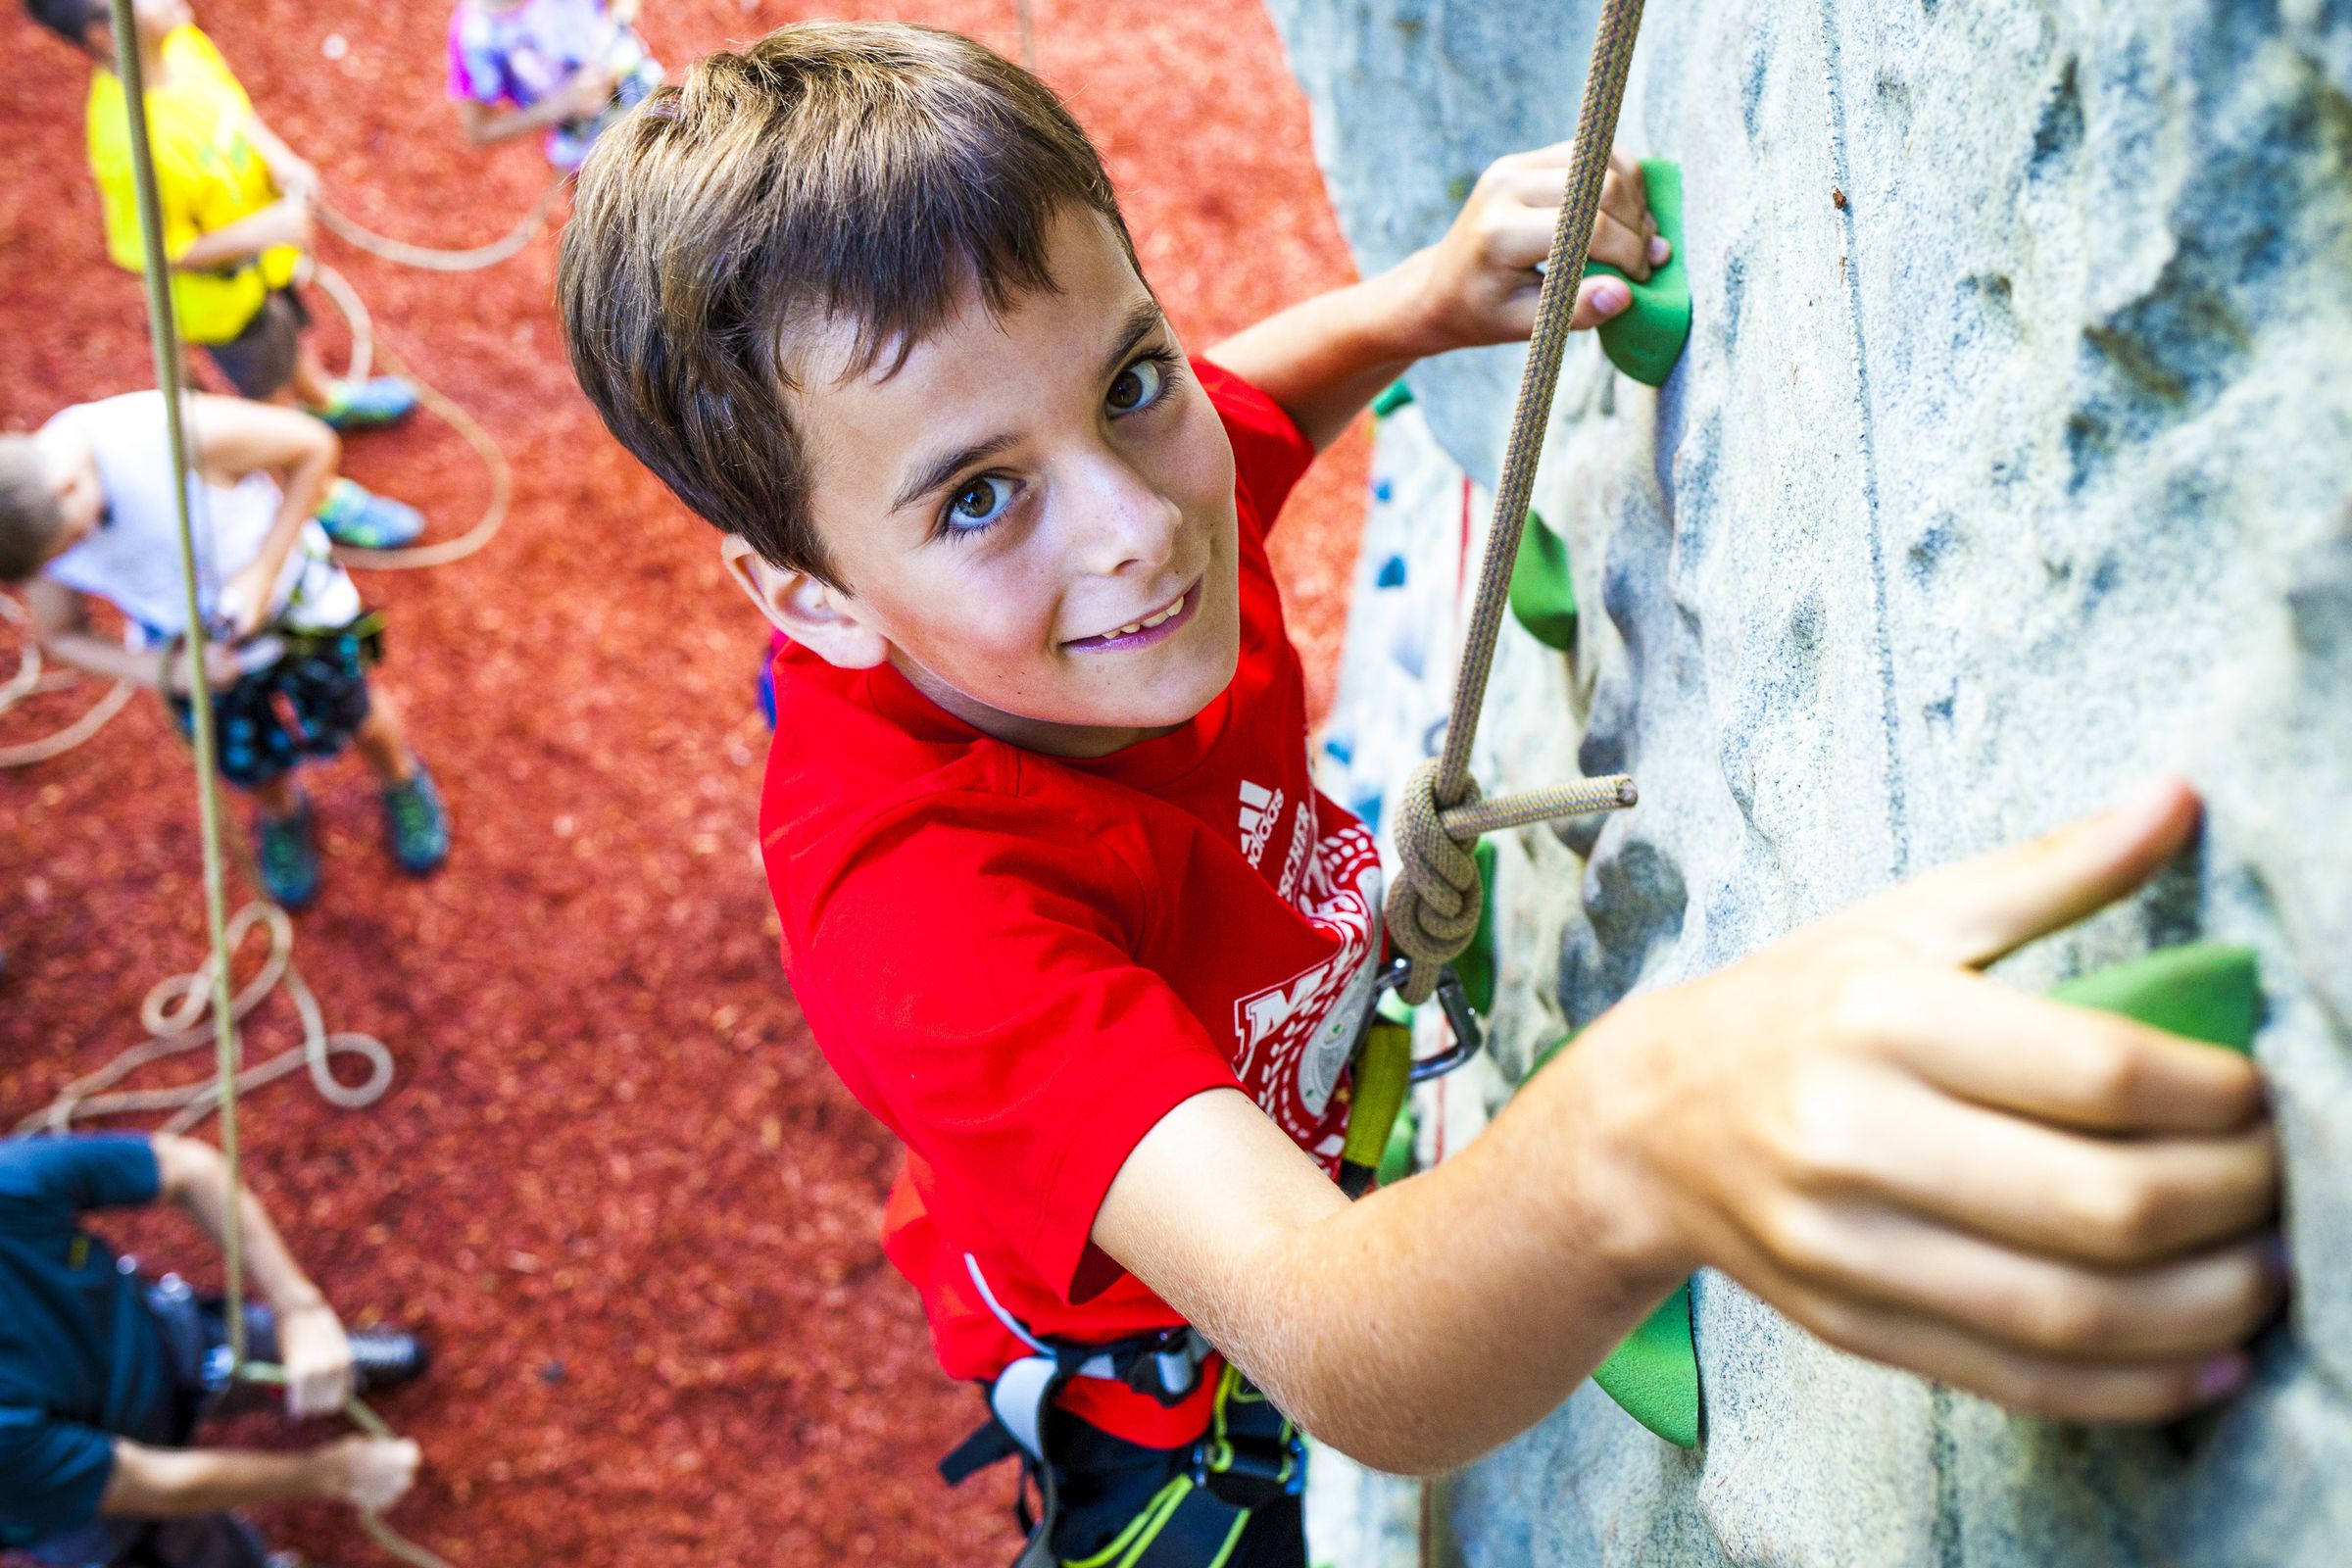 Eine Junge klettert grinsend eine Kletterwand hoch